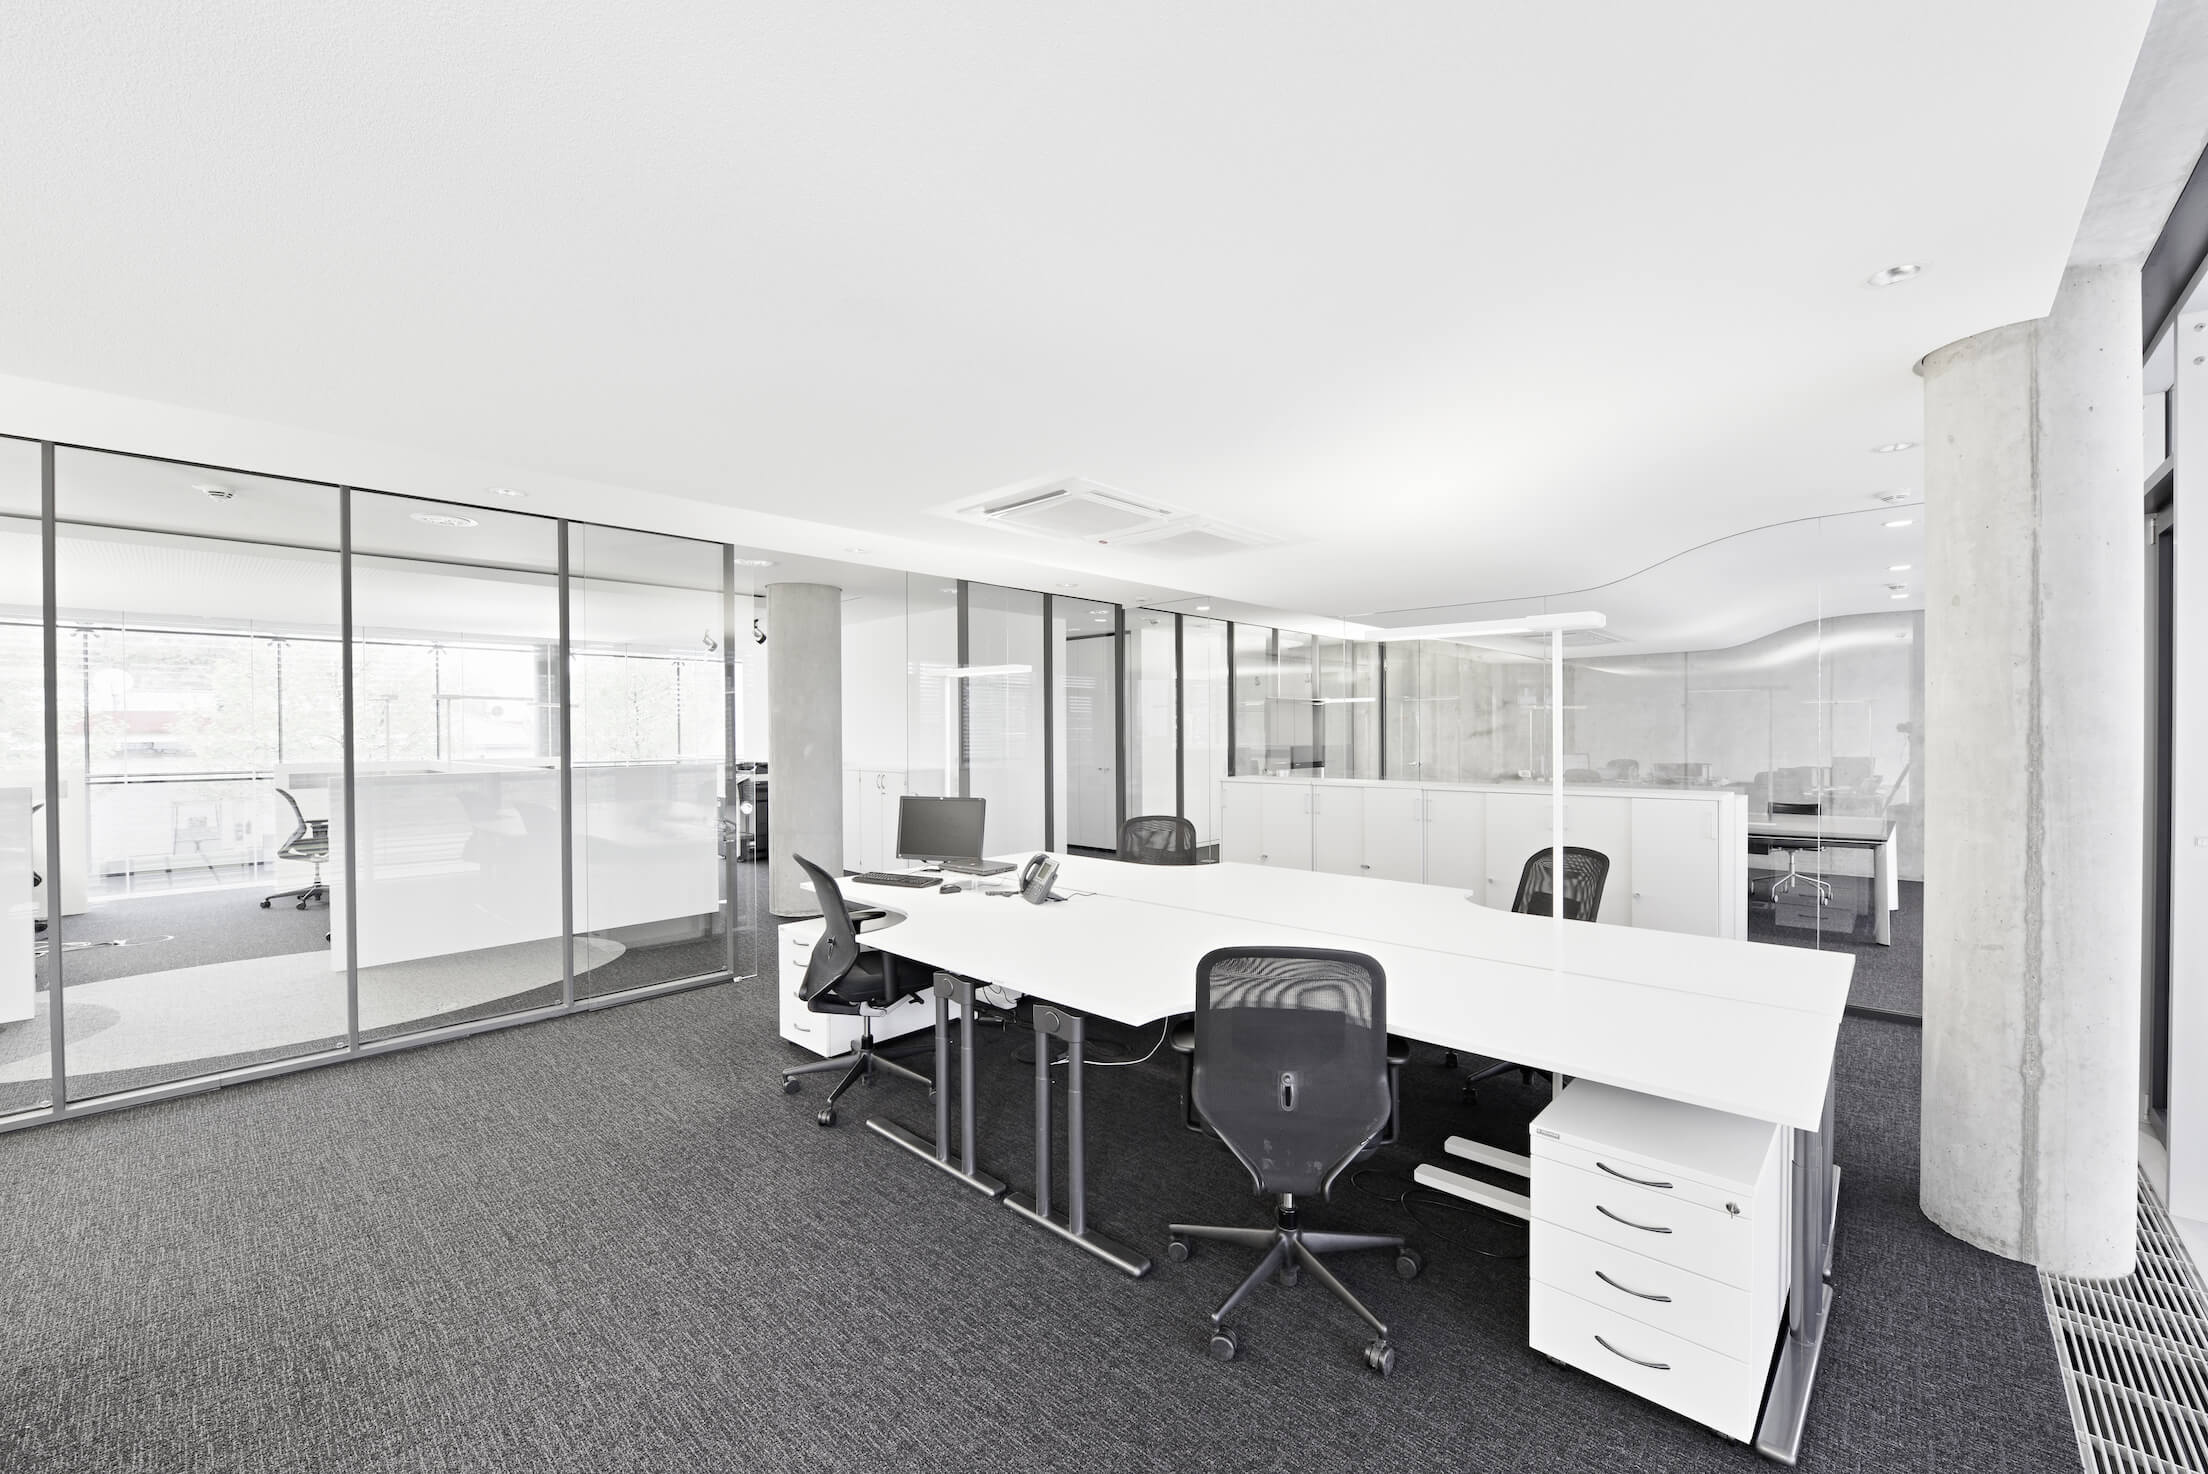 扫视一排由落地玻璃隔开的办公空间，人们可以欣赏到这种设计的开放性，使离散的空间有一种连续性。光滑的白色和金属桌子强调了亮度。